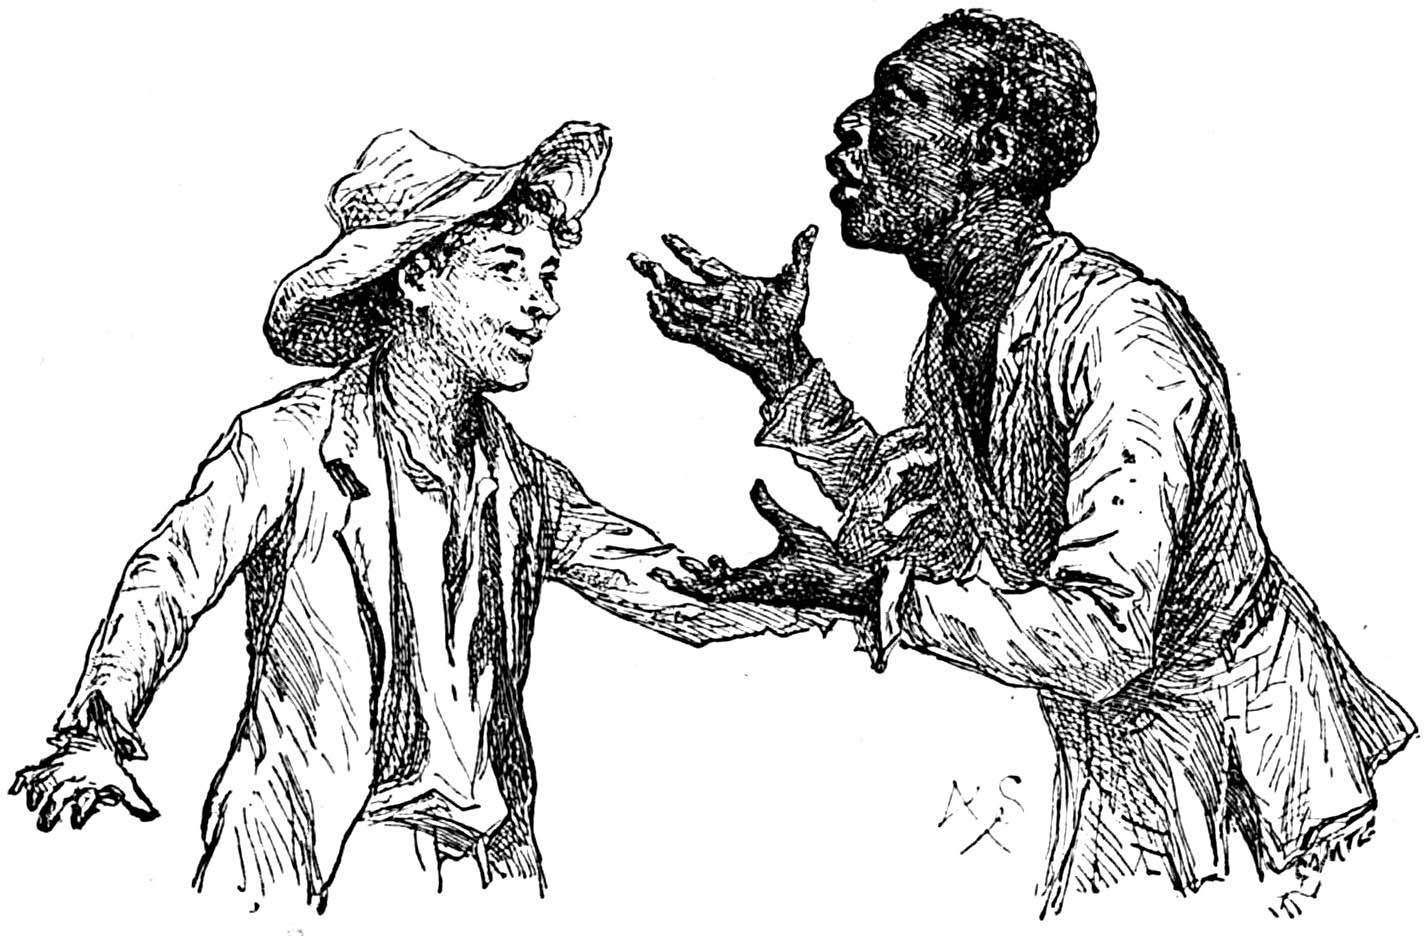 Essay on mark twain and slavery